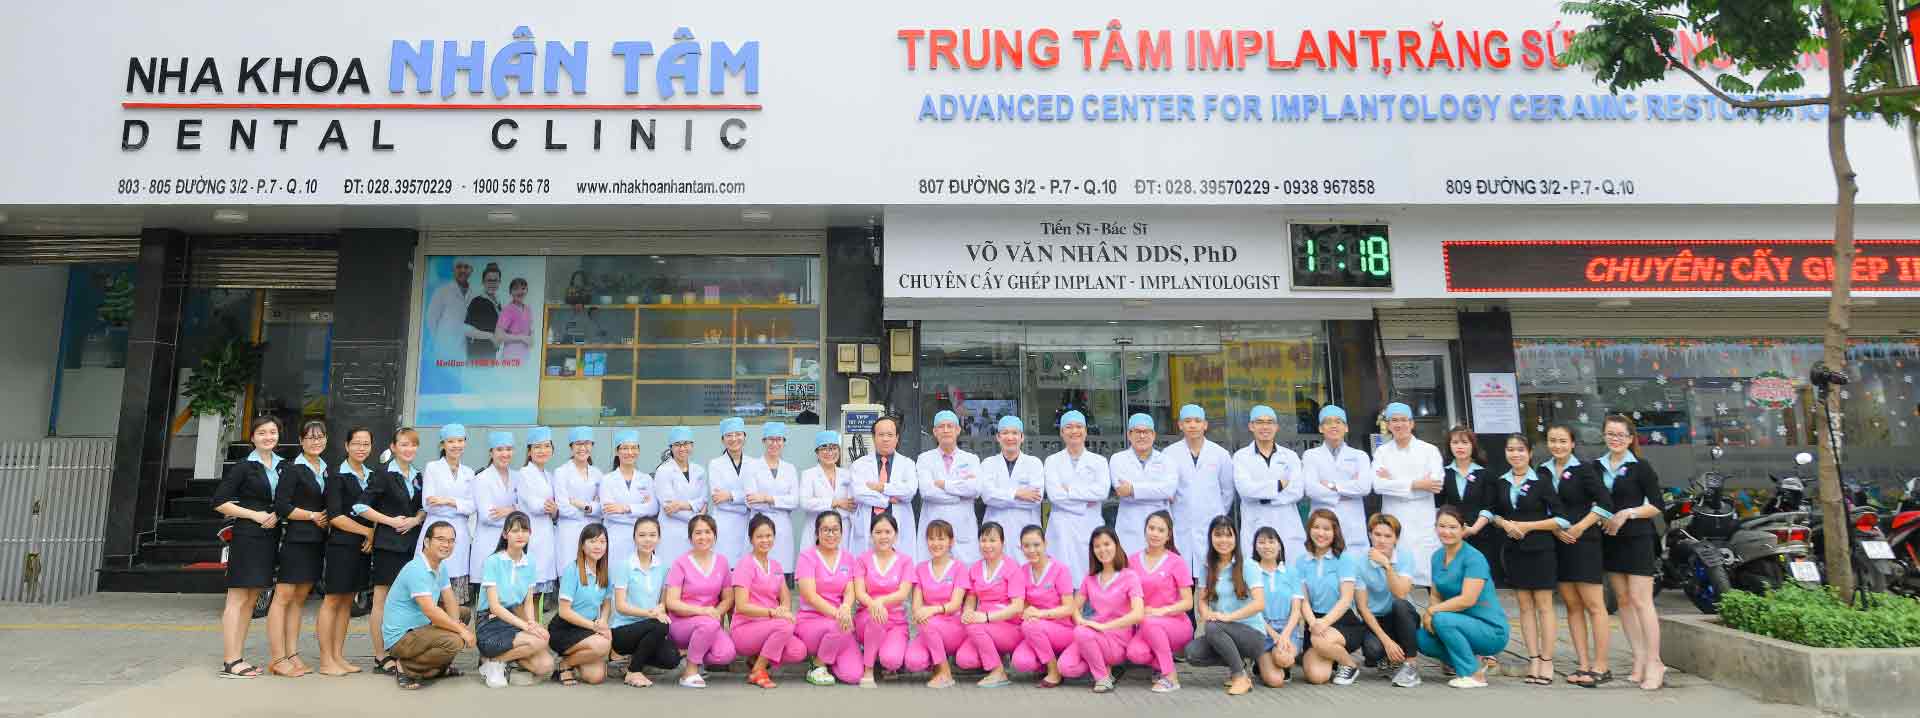 Trung tâm Implant Việt Nam